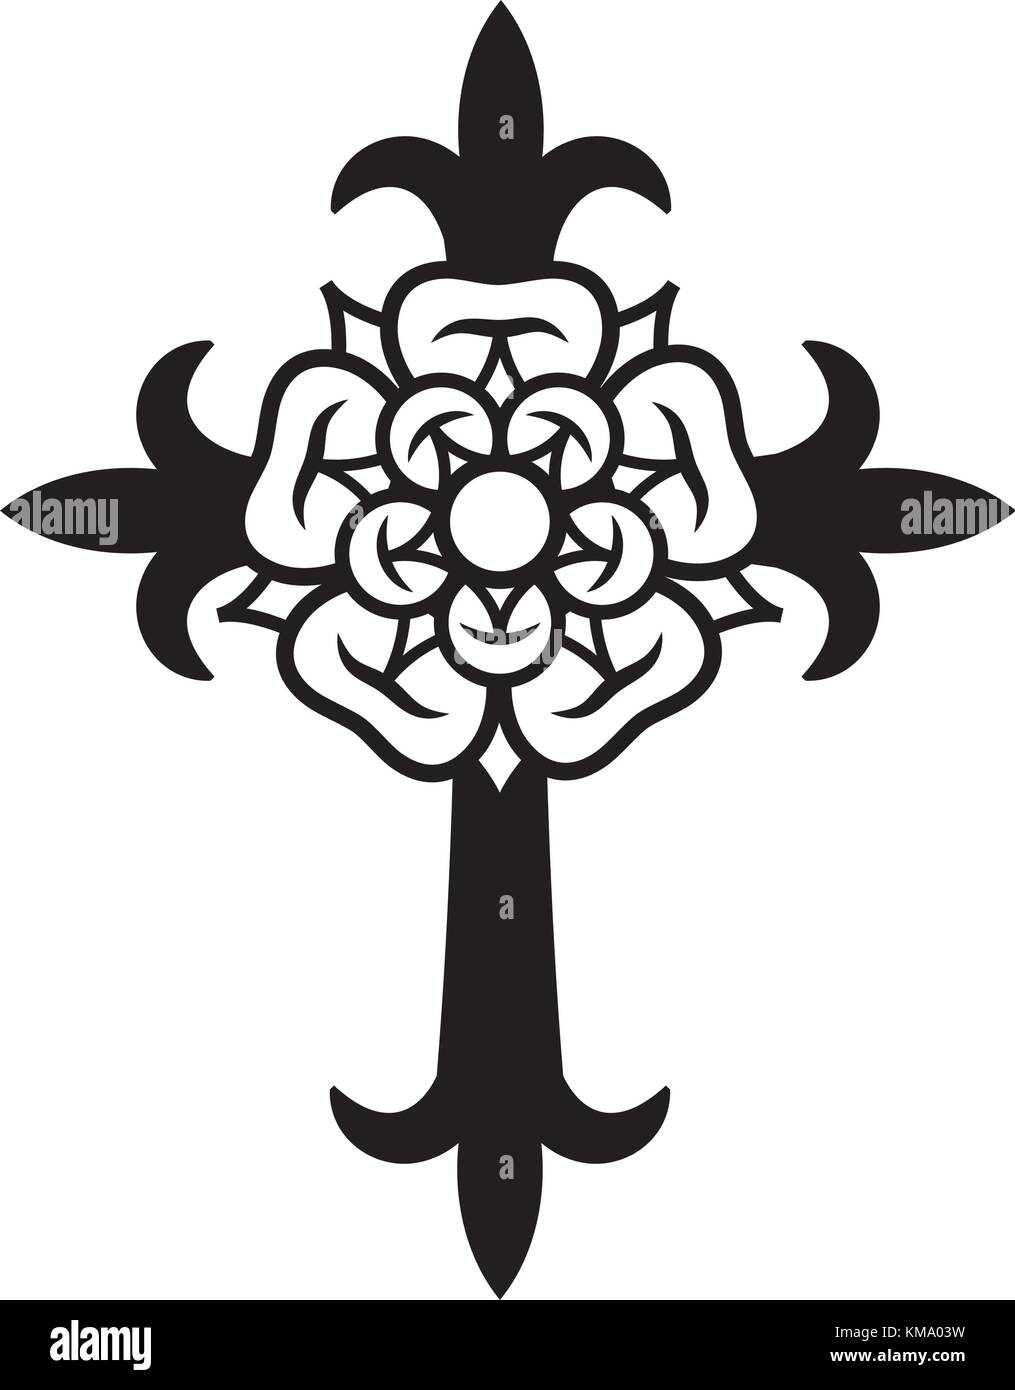 Rosenkreuz (Kreuz mit Rose). Das sakrale mystische Symbol der Rosenkreuzer,  das Emblem der mittelalterlichen Geheimgesellschaft Stock-Vektorgrafik -  Alamy